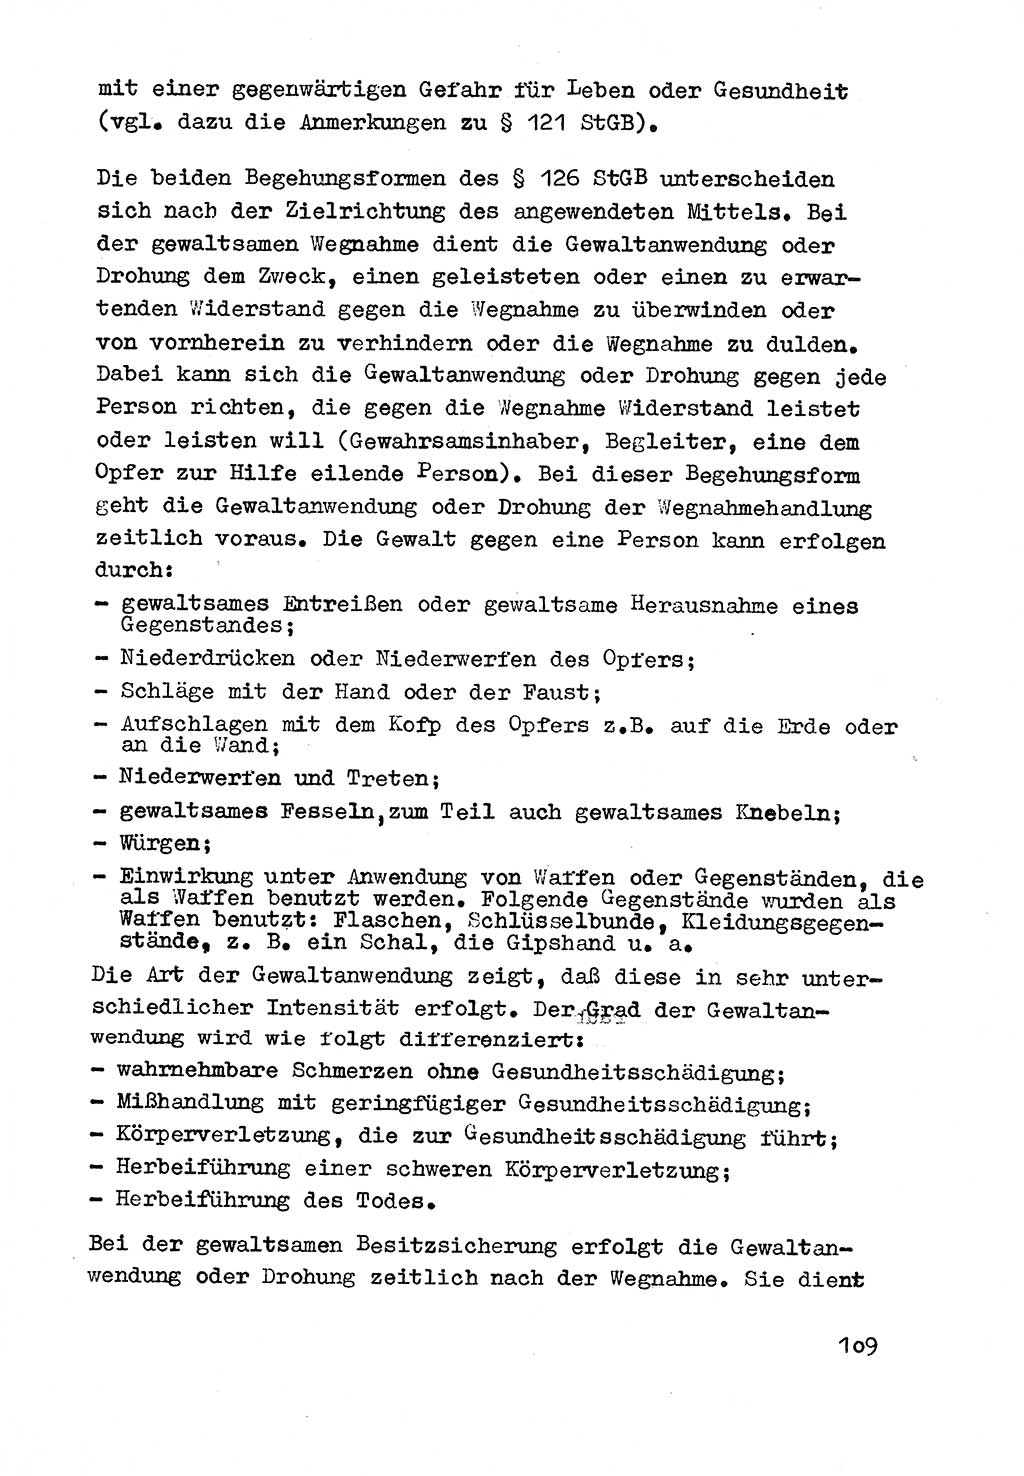 Strafrecht der DDR (Deutsche Demokratische Republik), Besonderer Teil, Lehrmaterial, Heft 3 1969, Seite 109 (Strafr. DDR BT Lehrmat. H. 3 1969, S. 109)